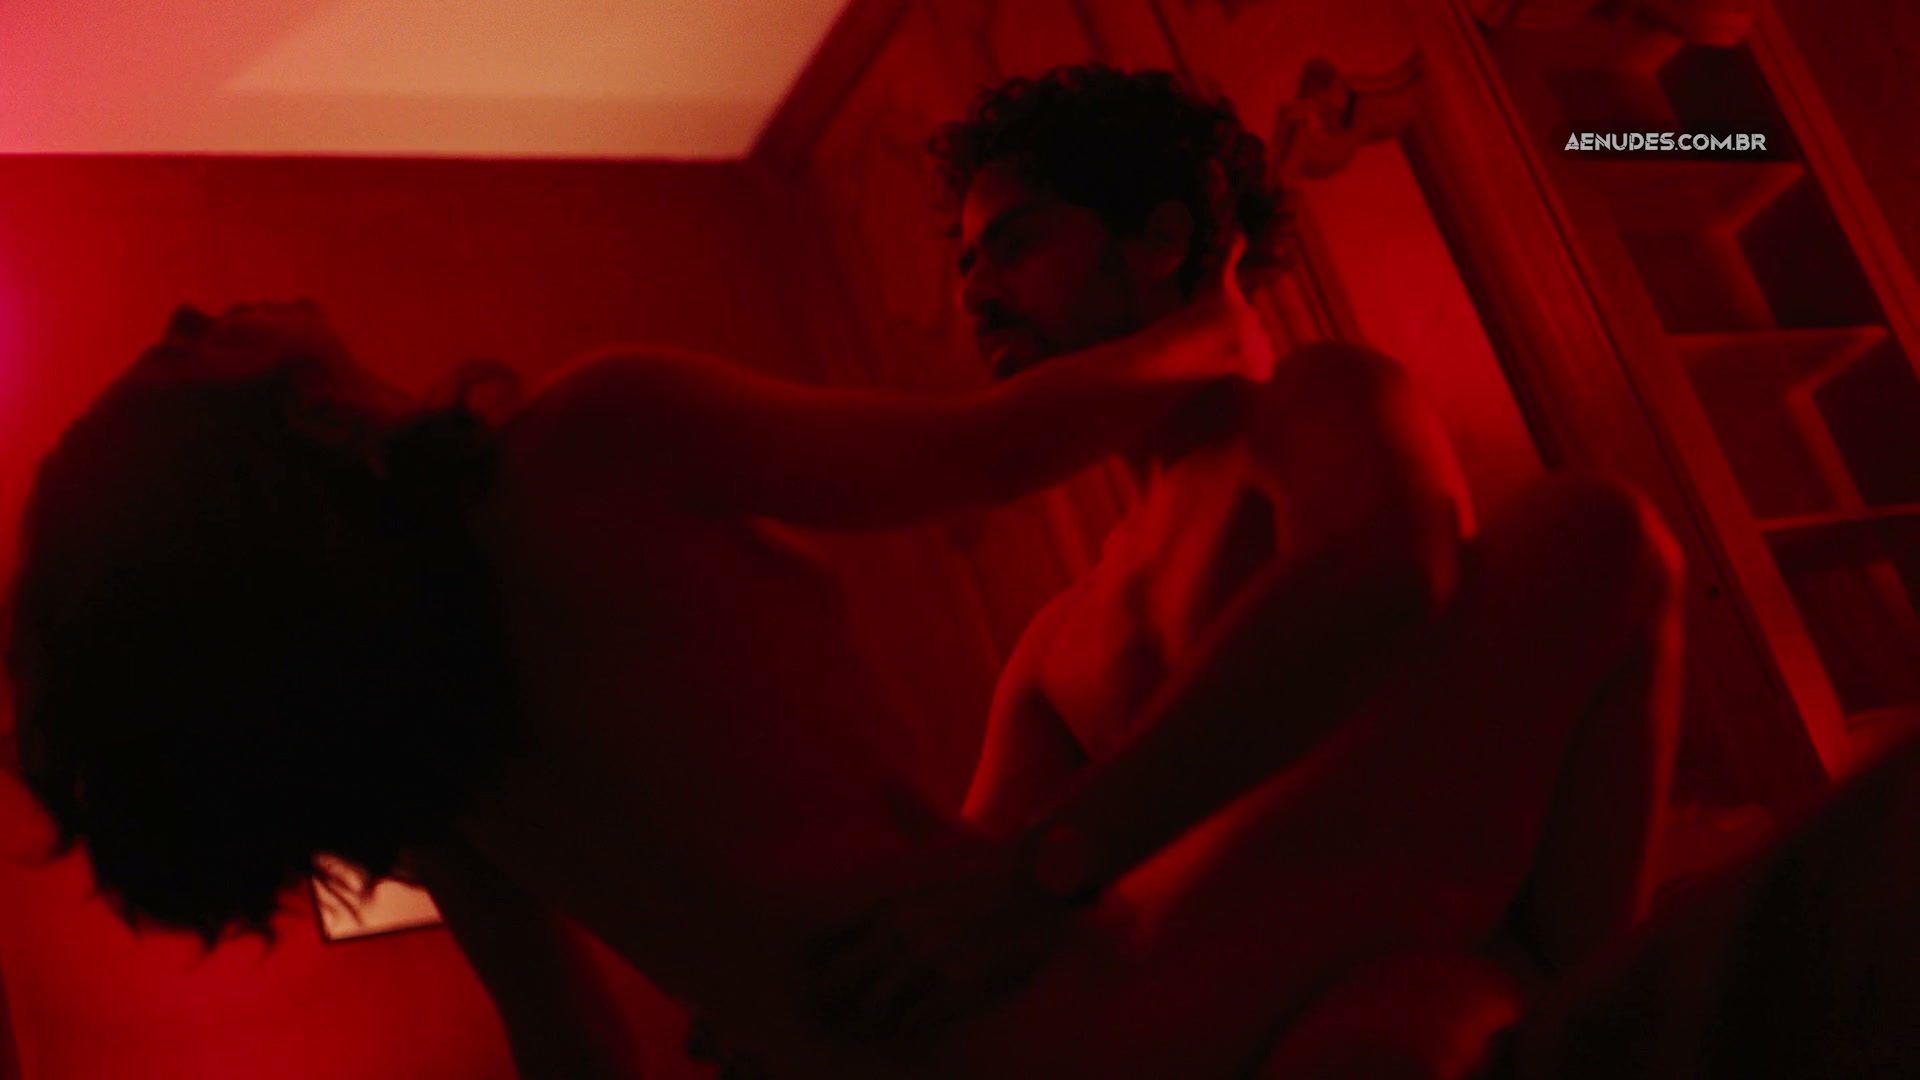 Julia Lanina nua e pelada cena de sexo em Um Contra Todos (Série)